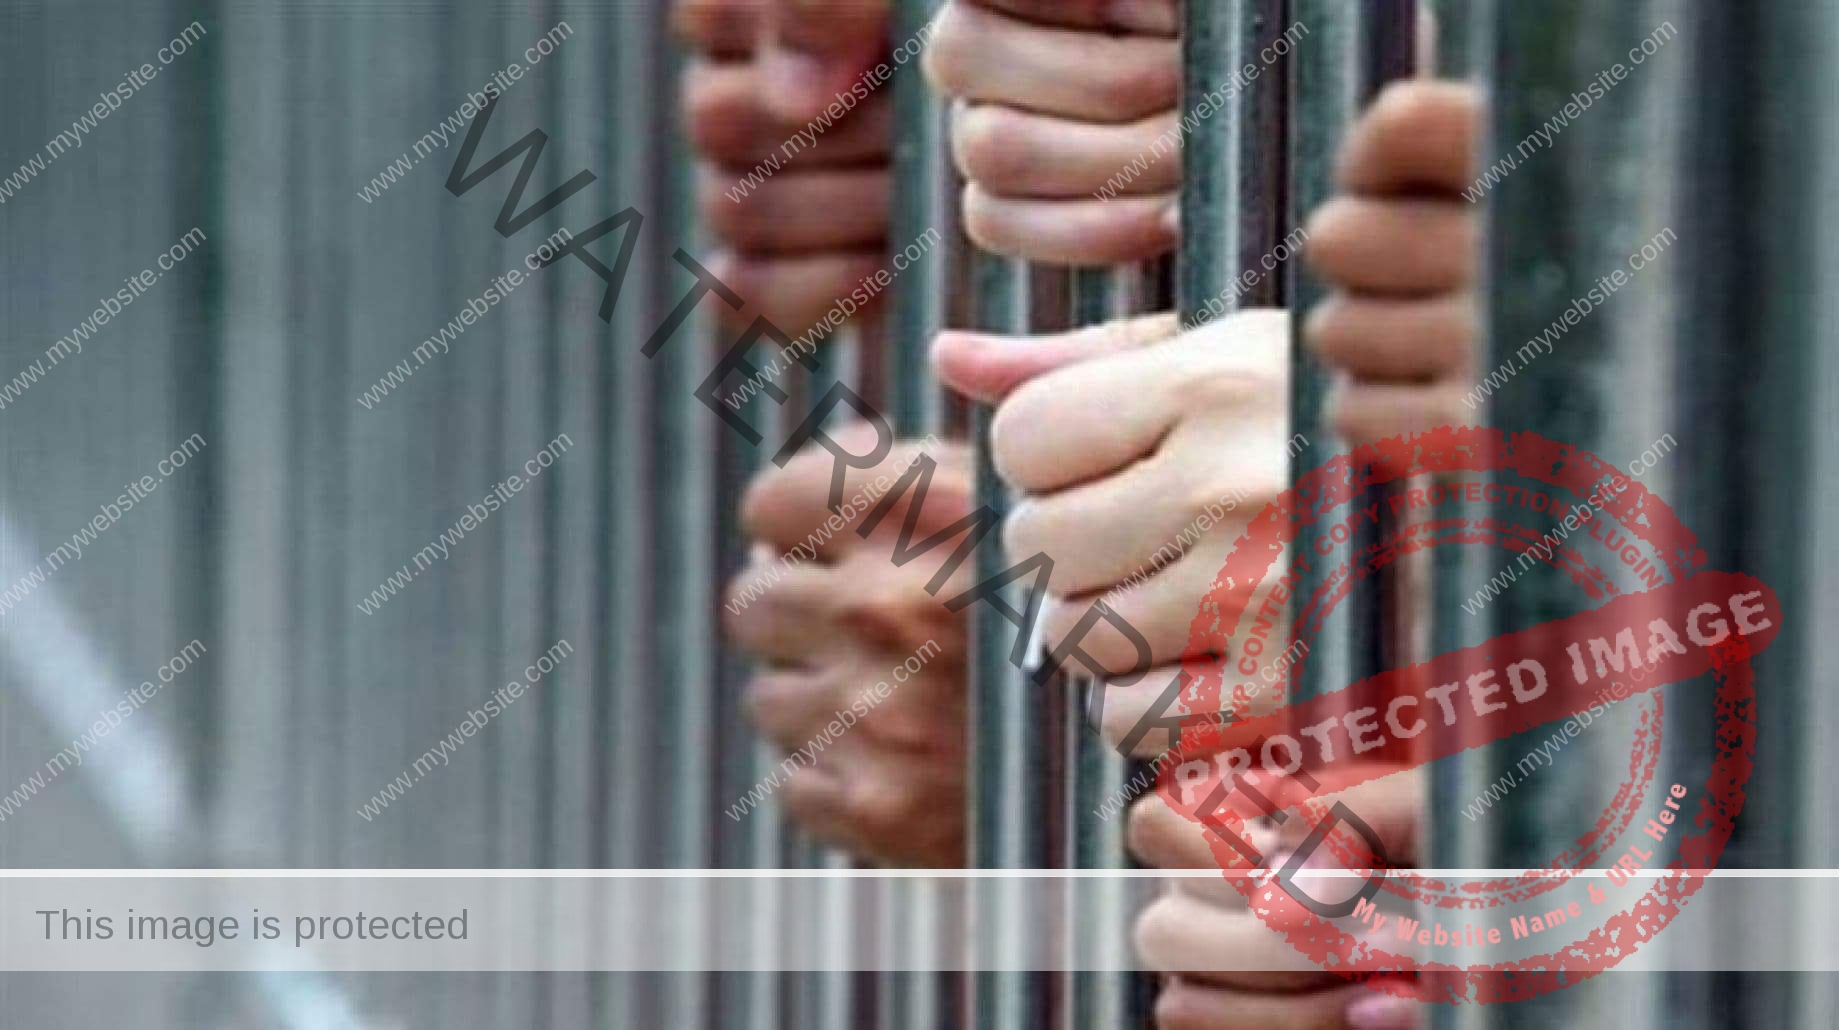 نيابة القليوبية: حبس 18 عاطلا ضبطوا بحوزتهم بانجو وحشيش وأسلحة نارية